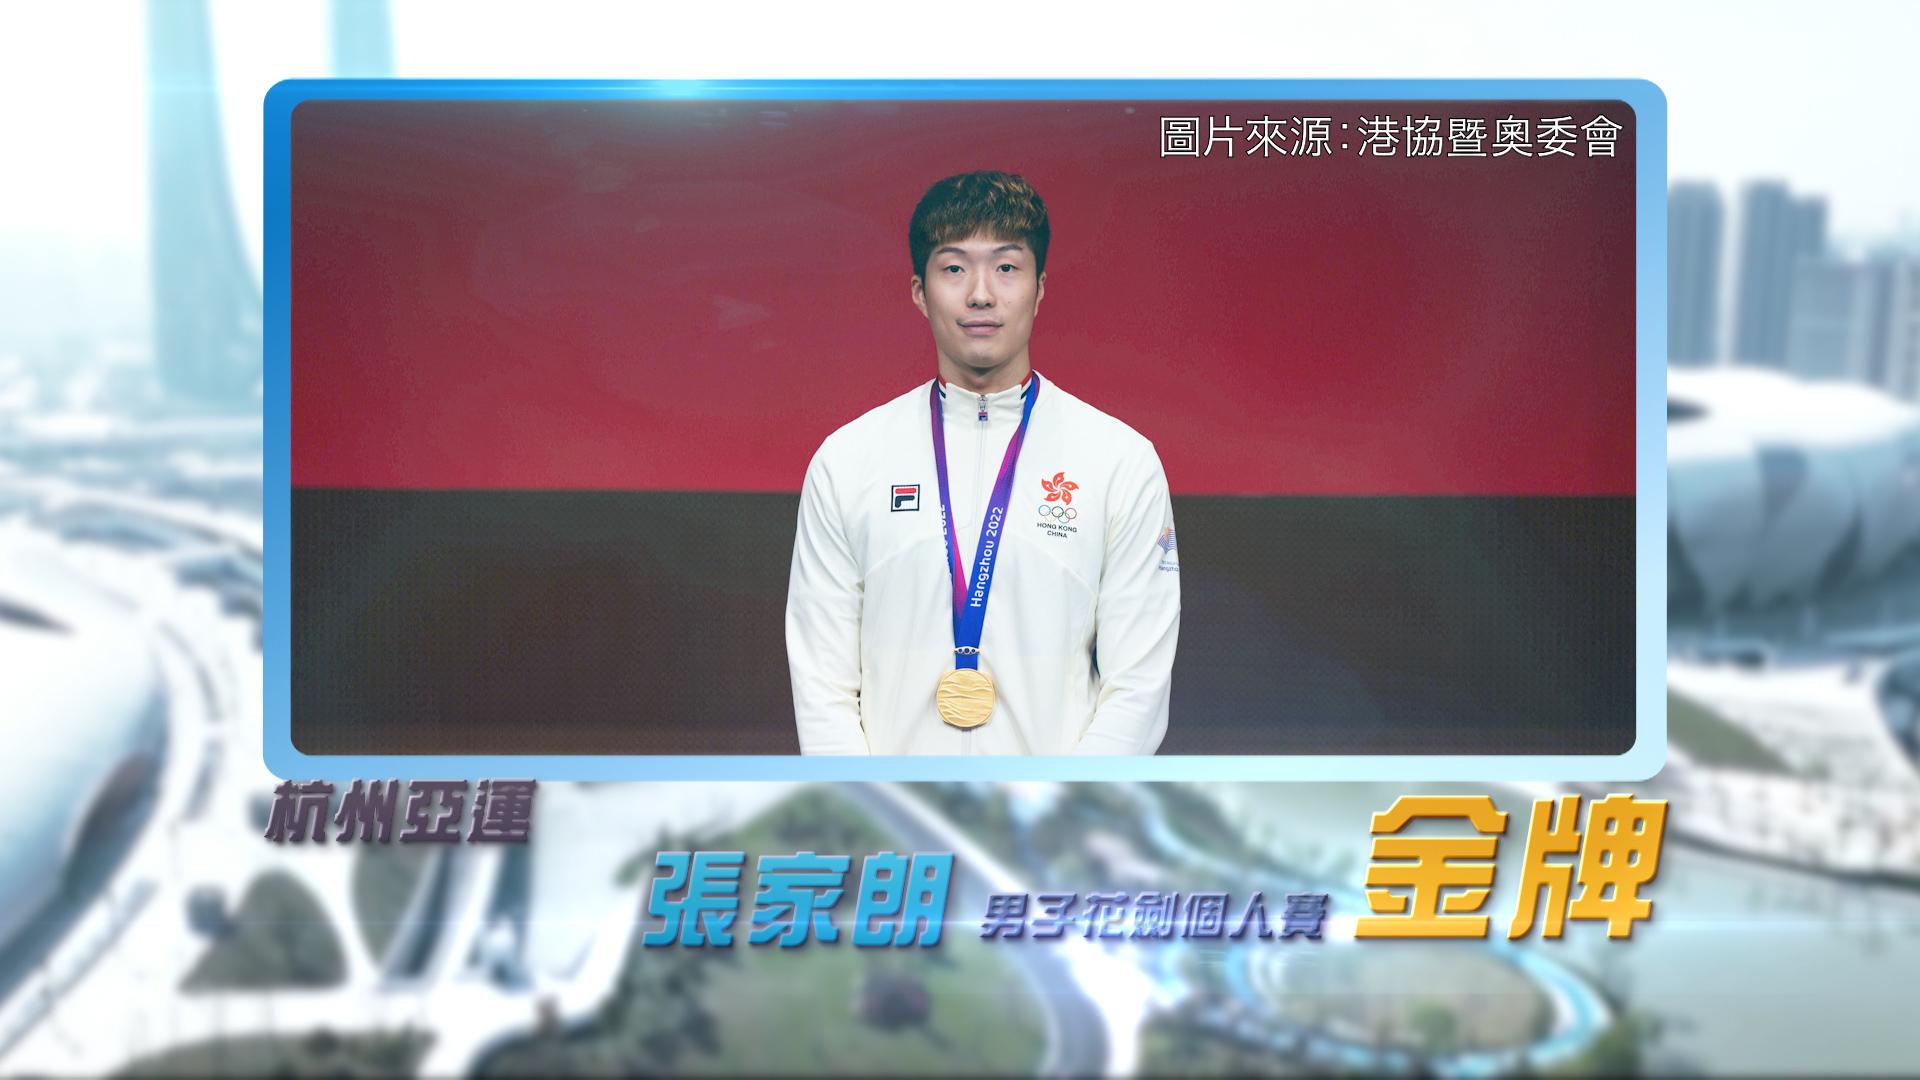 恭喜香港剑击代表张家朗、蔡俊彦及江旻憓于杭州亚运表现出色